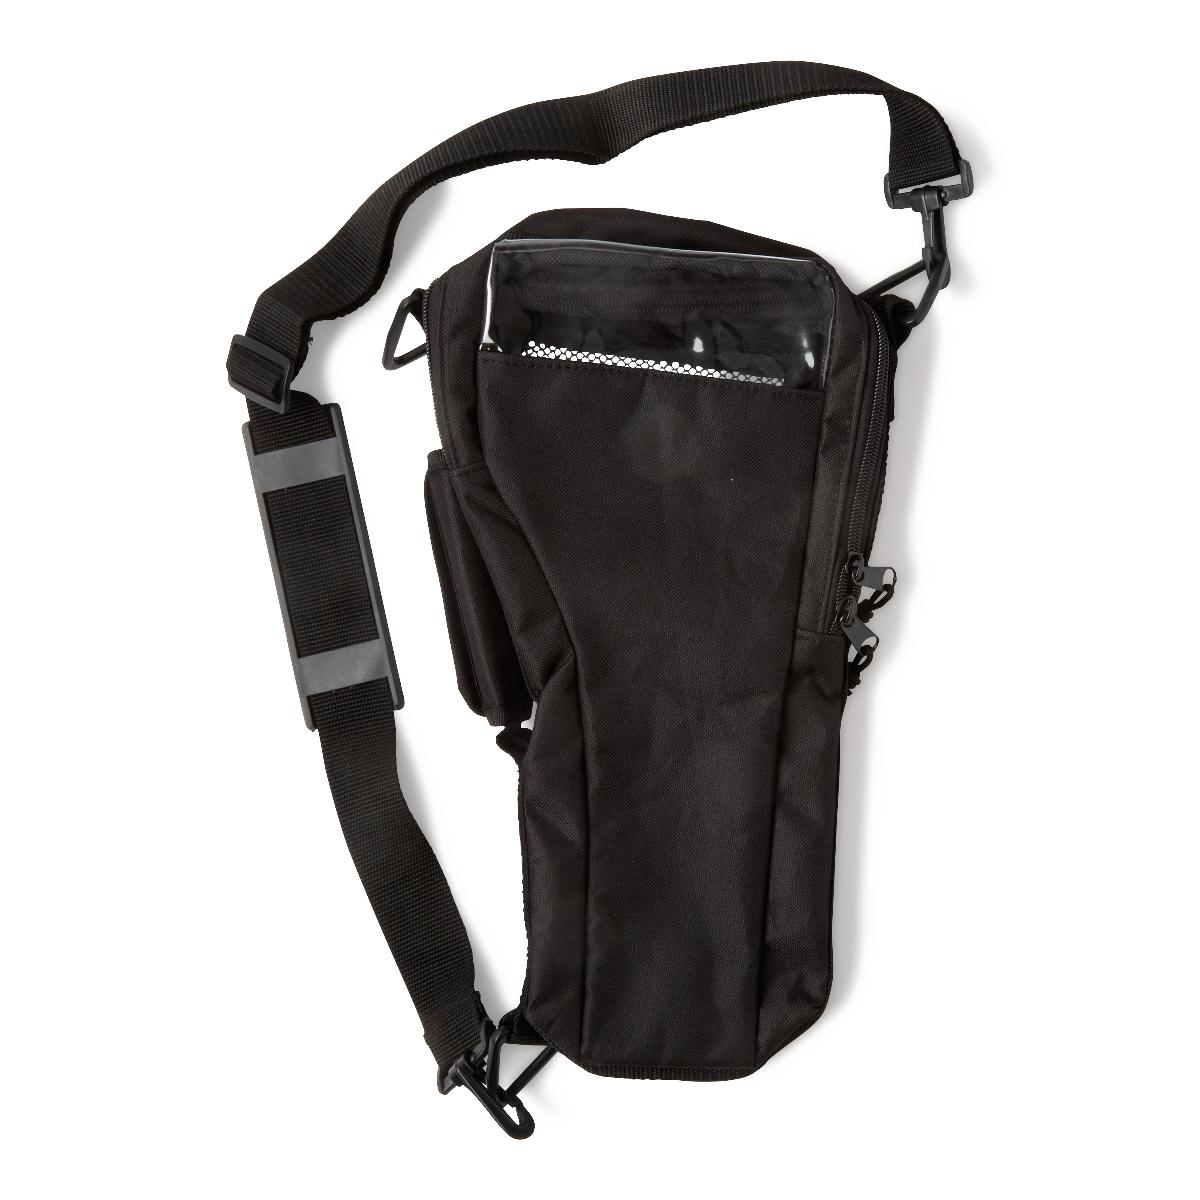 Oxygen Cylinder Shoulder Bags,Black Case of 6